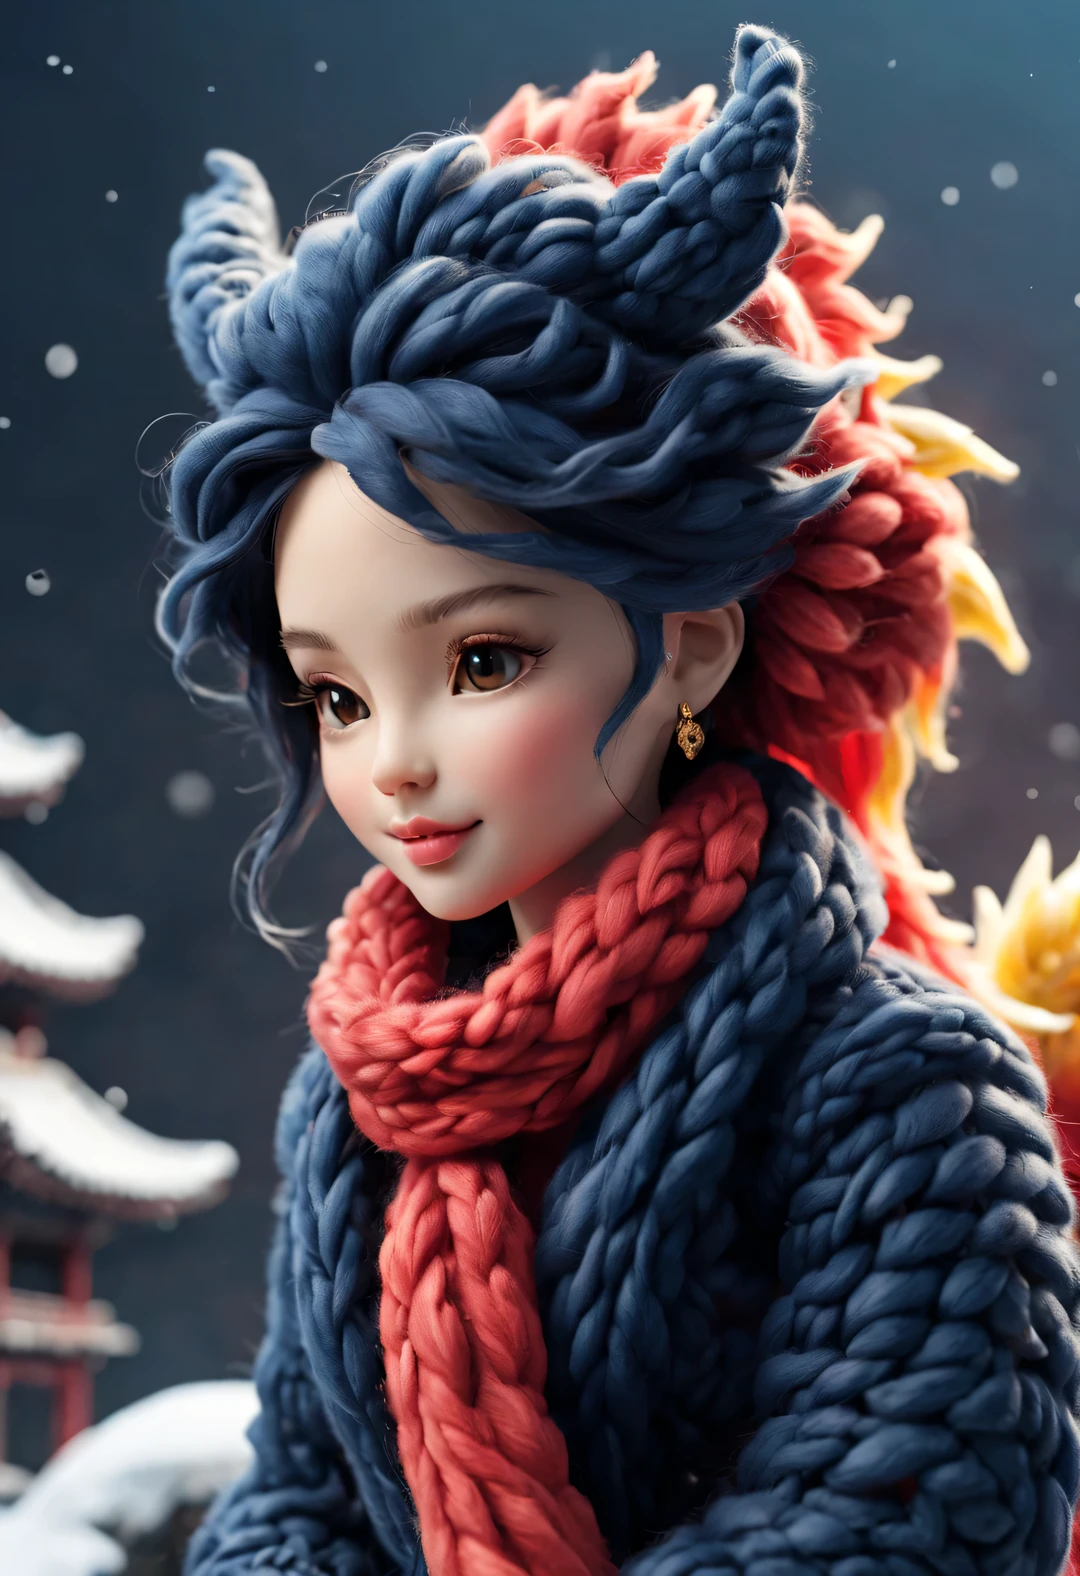 （ぬいぐるみのデザイン），笑顔のかわいい中国のドラゴンの赤ちゃんとバービー人形，（羊毛クラフト），（ふわふわ：0.68） ，冬の高級ゴージャスなファッション中国風セーターマフラー， かわいい3Dレンダリング，背景：ダークネイビーと燃えるようなレッド，大雪の地面，金色の，かわいくて精巧なデジタルアート，ミニチュア感，様式化された 3D レンダリング，3D レンダリングされたフィギュア アート 8k，素敵なデジタル絵画，アニメスタイルの3D，超詳細なレンダリング